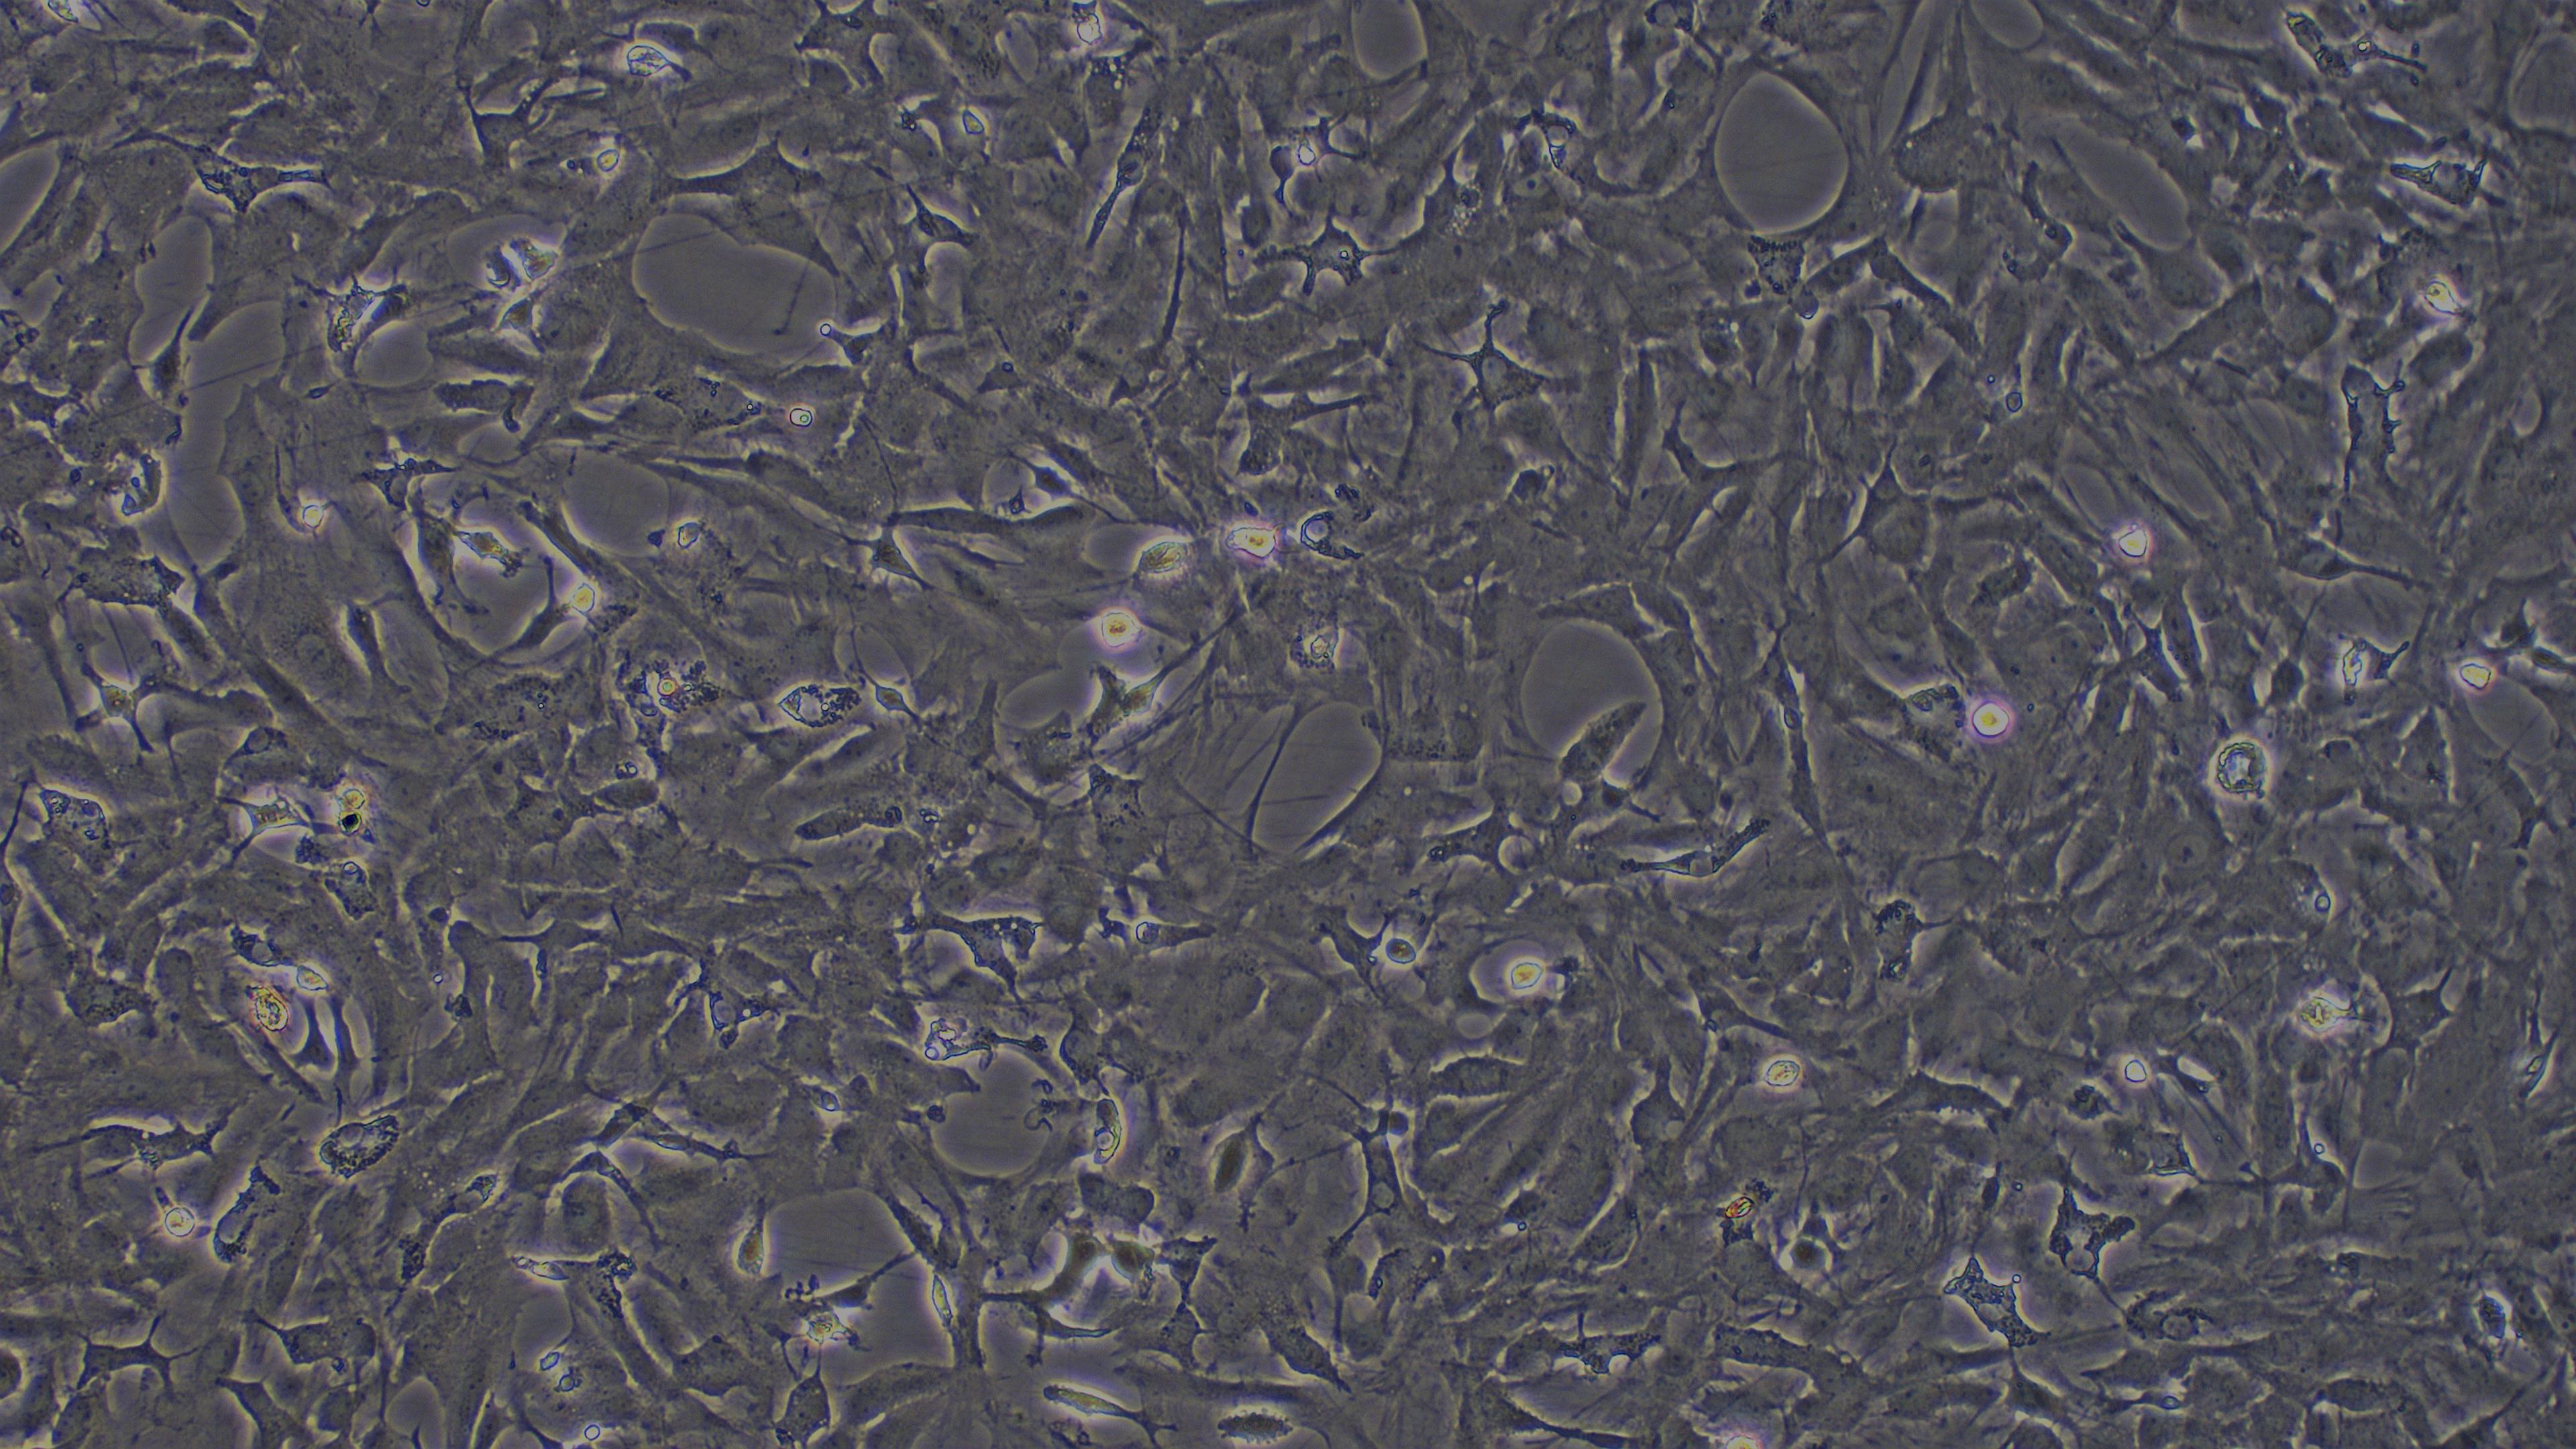 大鼠脑星形胶质细胞(BA)原代细胞